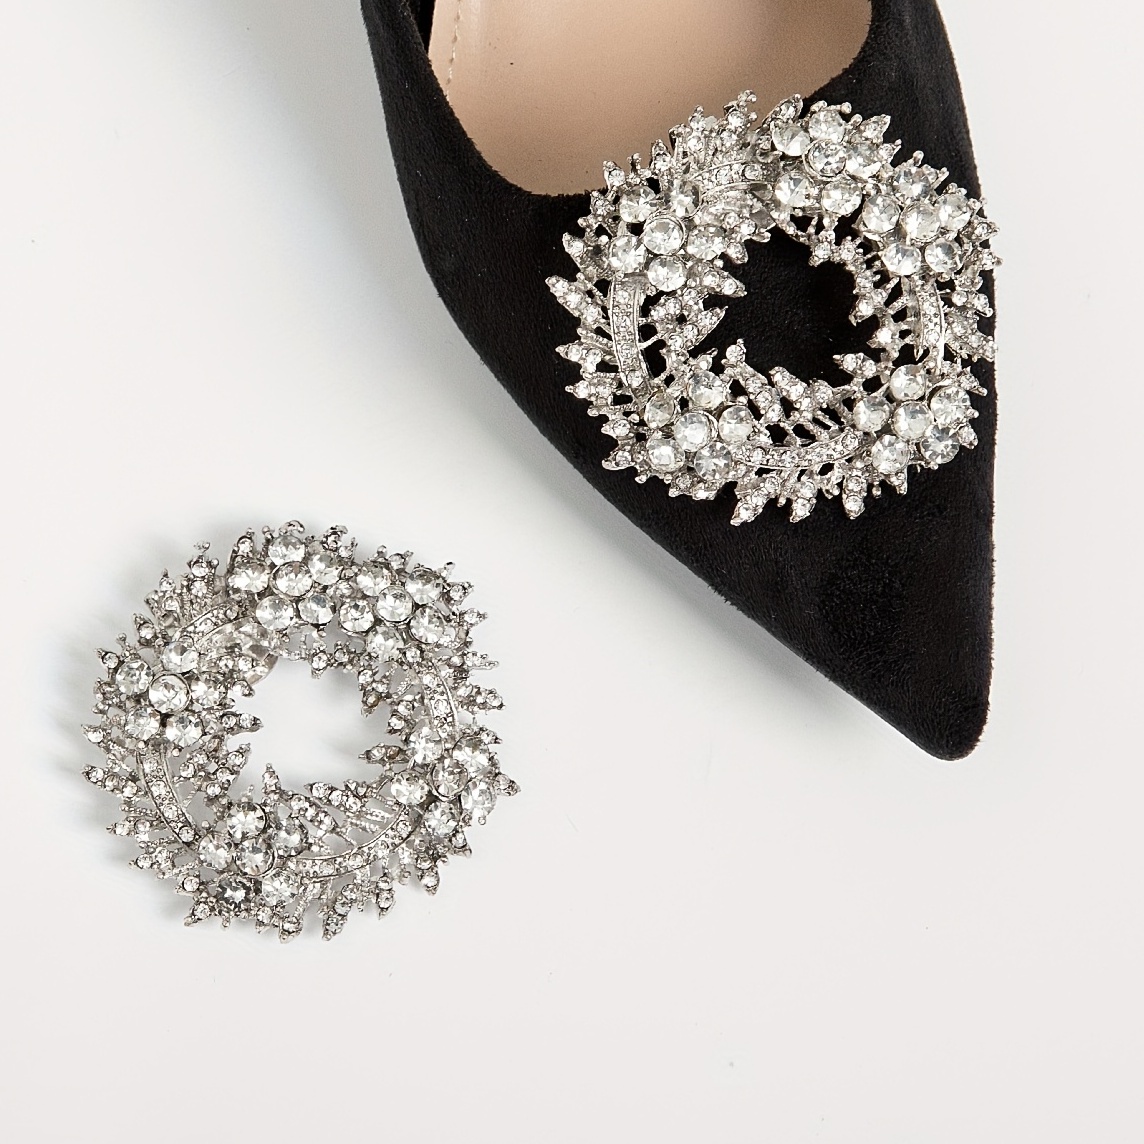 Shoe clip for dress shoes, Sparkle shoe clip